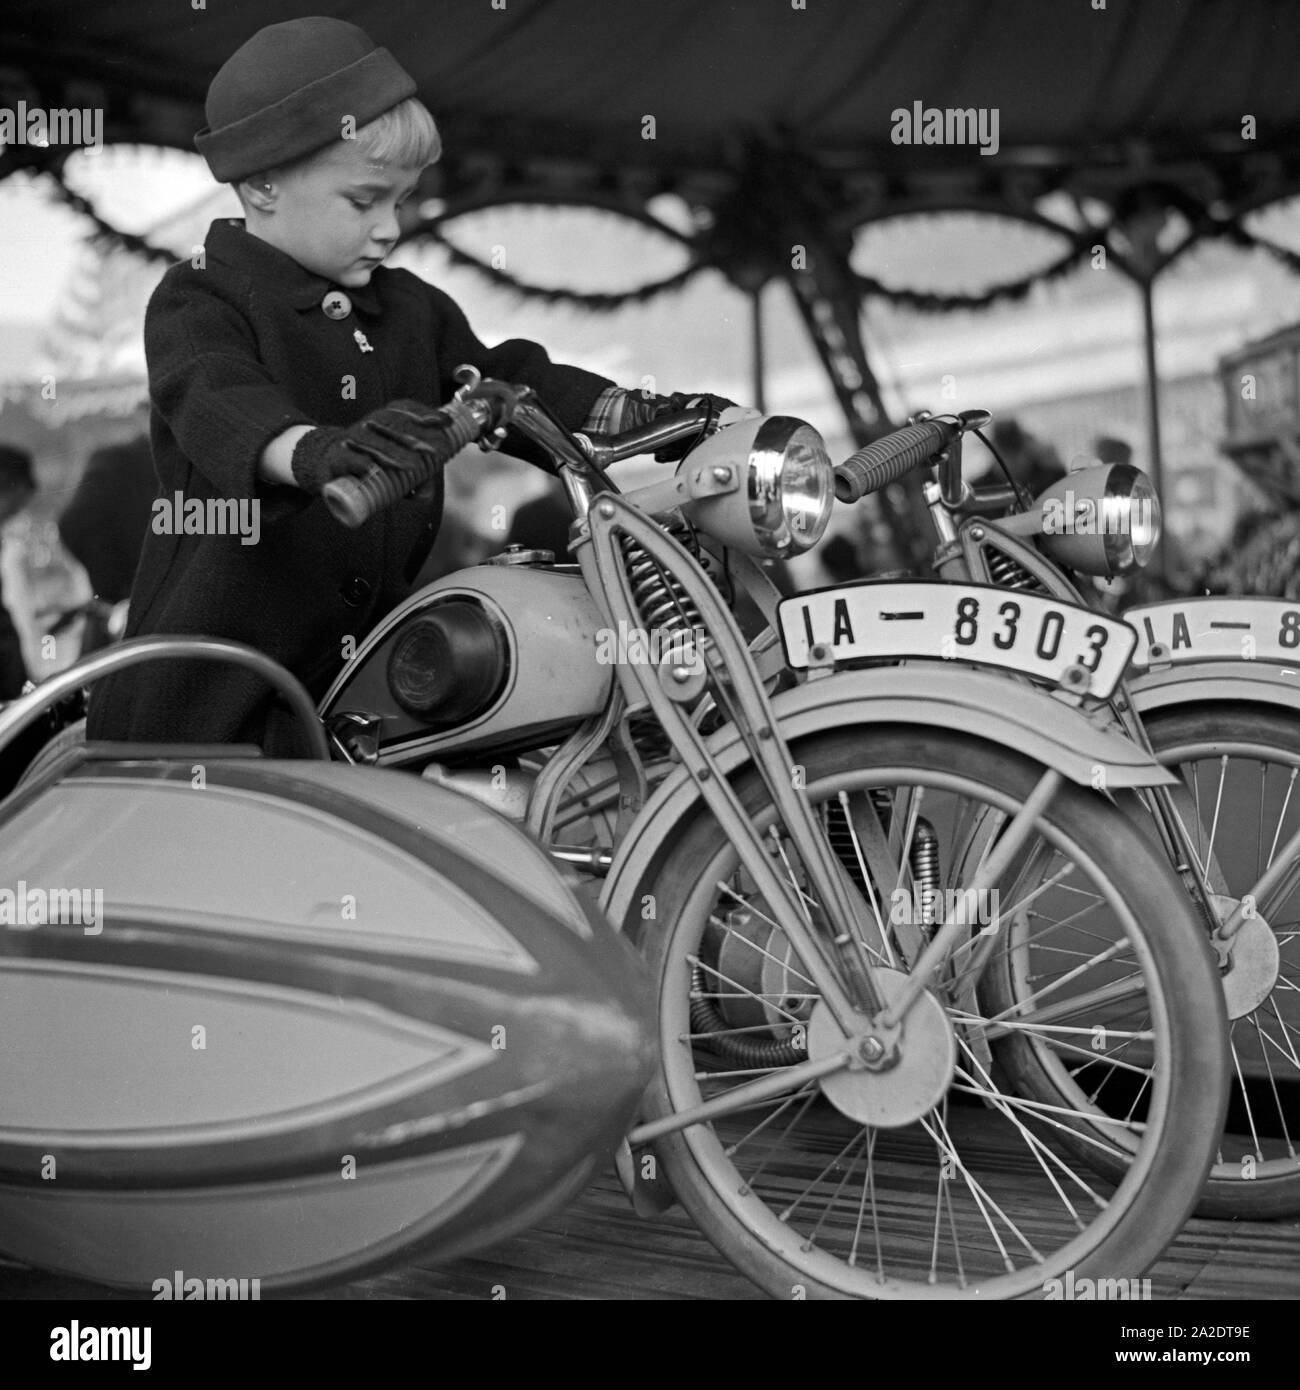 Ein kleiner Junge auf dem Motorrad und auf dem Kinderkarussels Weihnachtsmarkt Deutschland, 1930er Jahre. Un petit garçon sur la moto d'un carrousel kiddy au marché de noël, Allemagne 1930. Banque D'Images